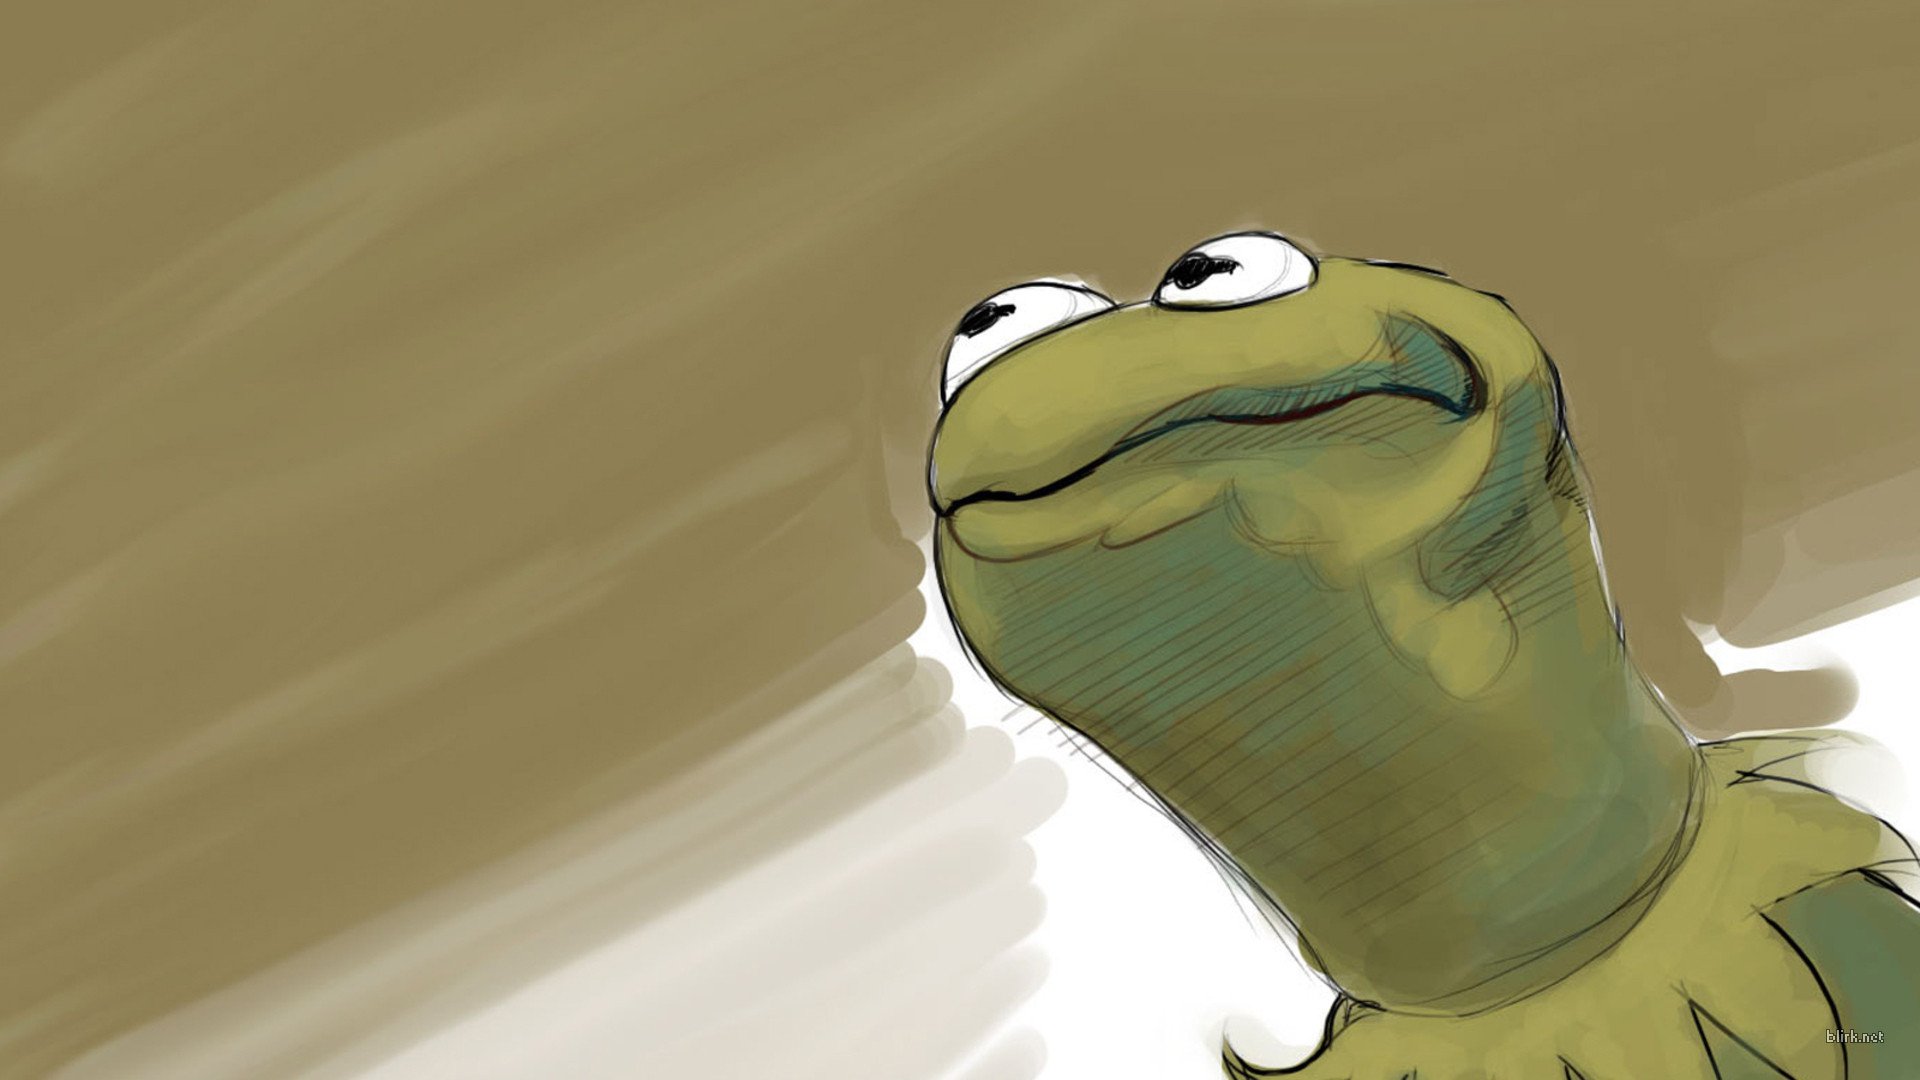 Meme Sesame Street Kermit The Frog Wallpaper